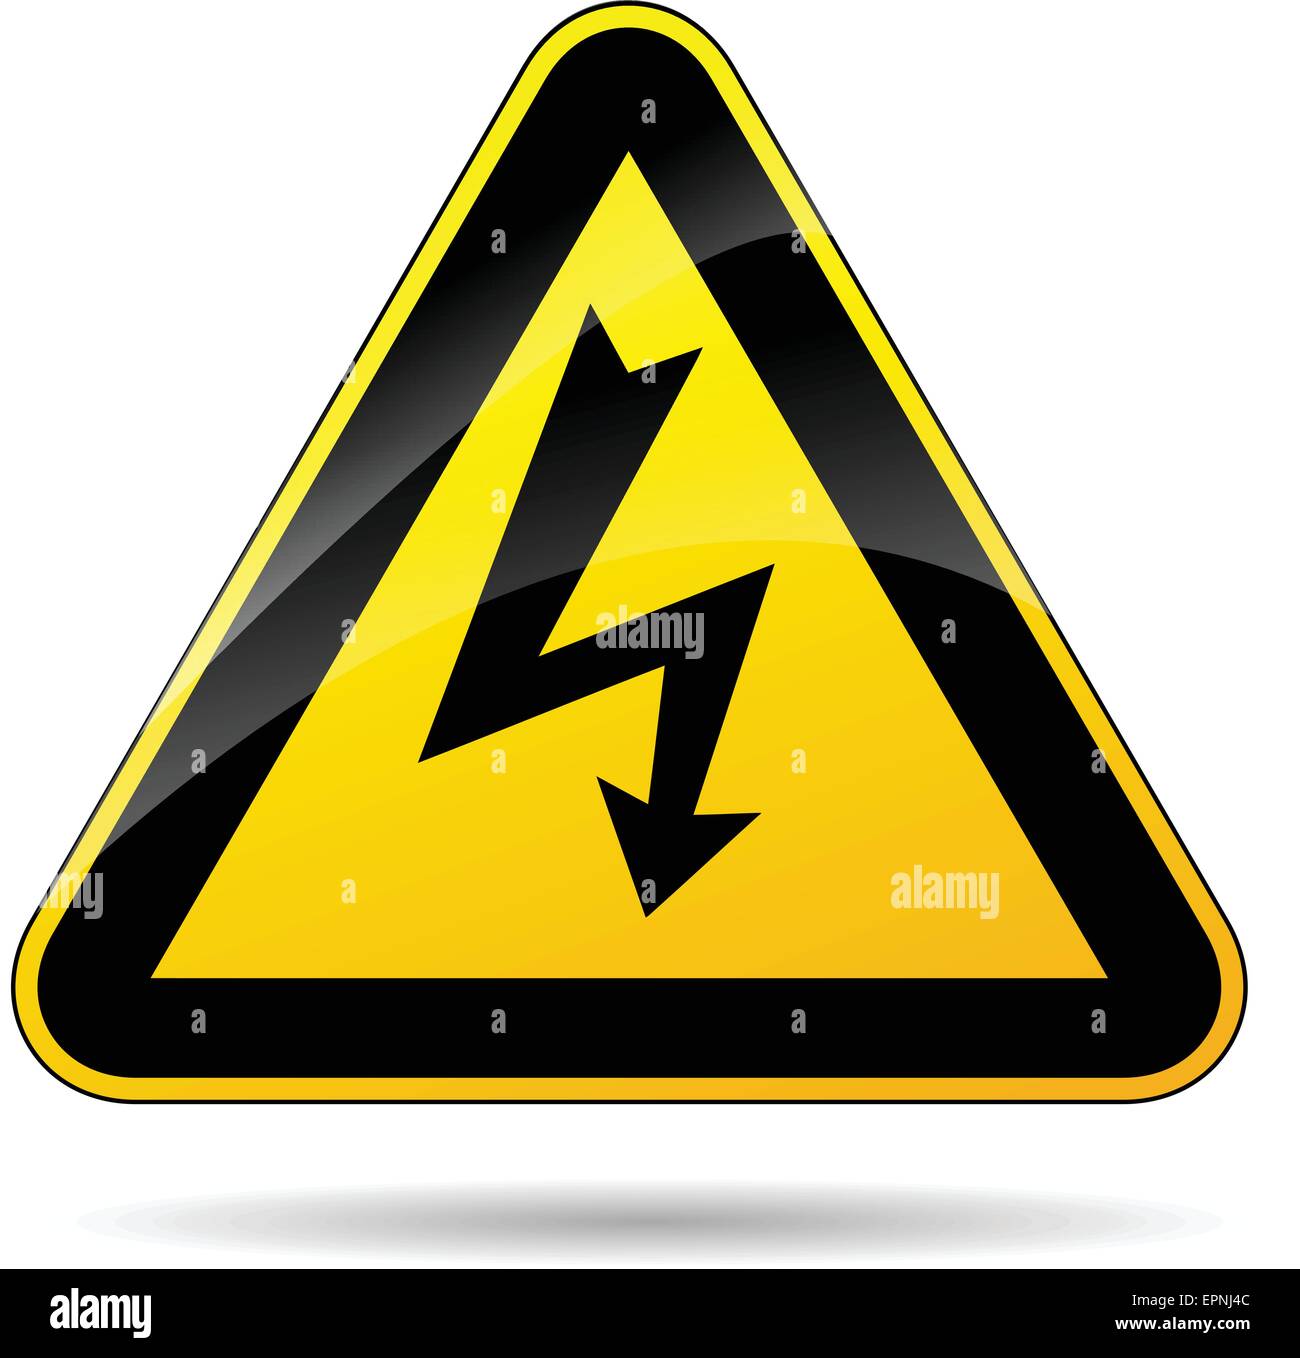 Immagine del triangolo giallo segno per l'elettricità Illustrazione Vettoriale